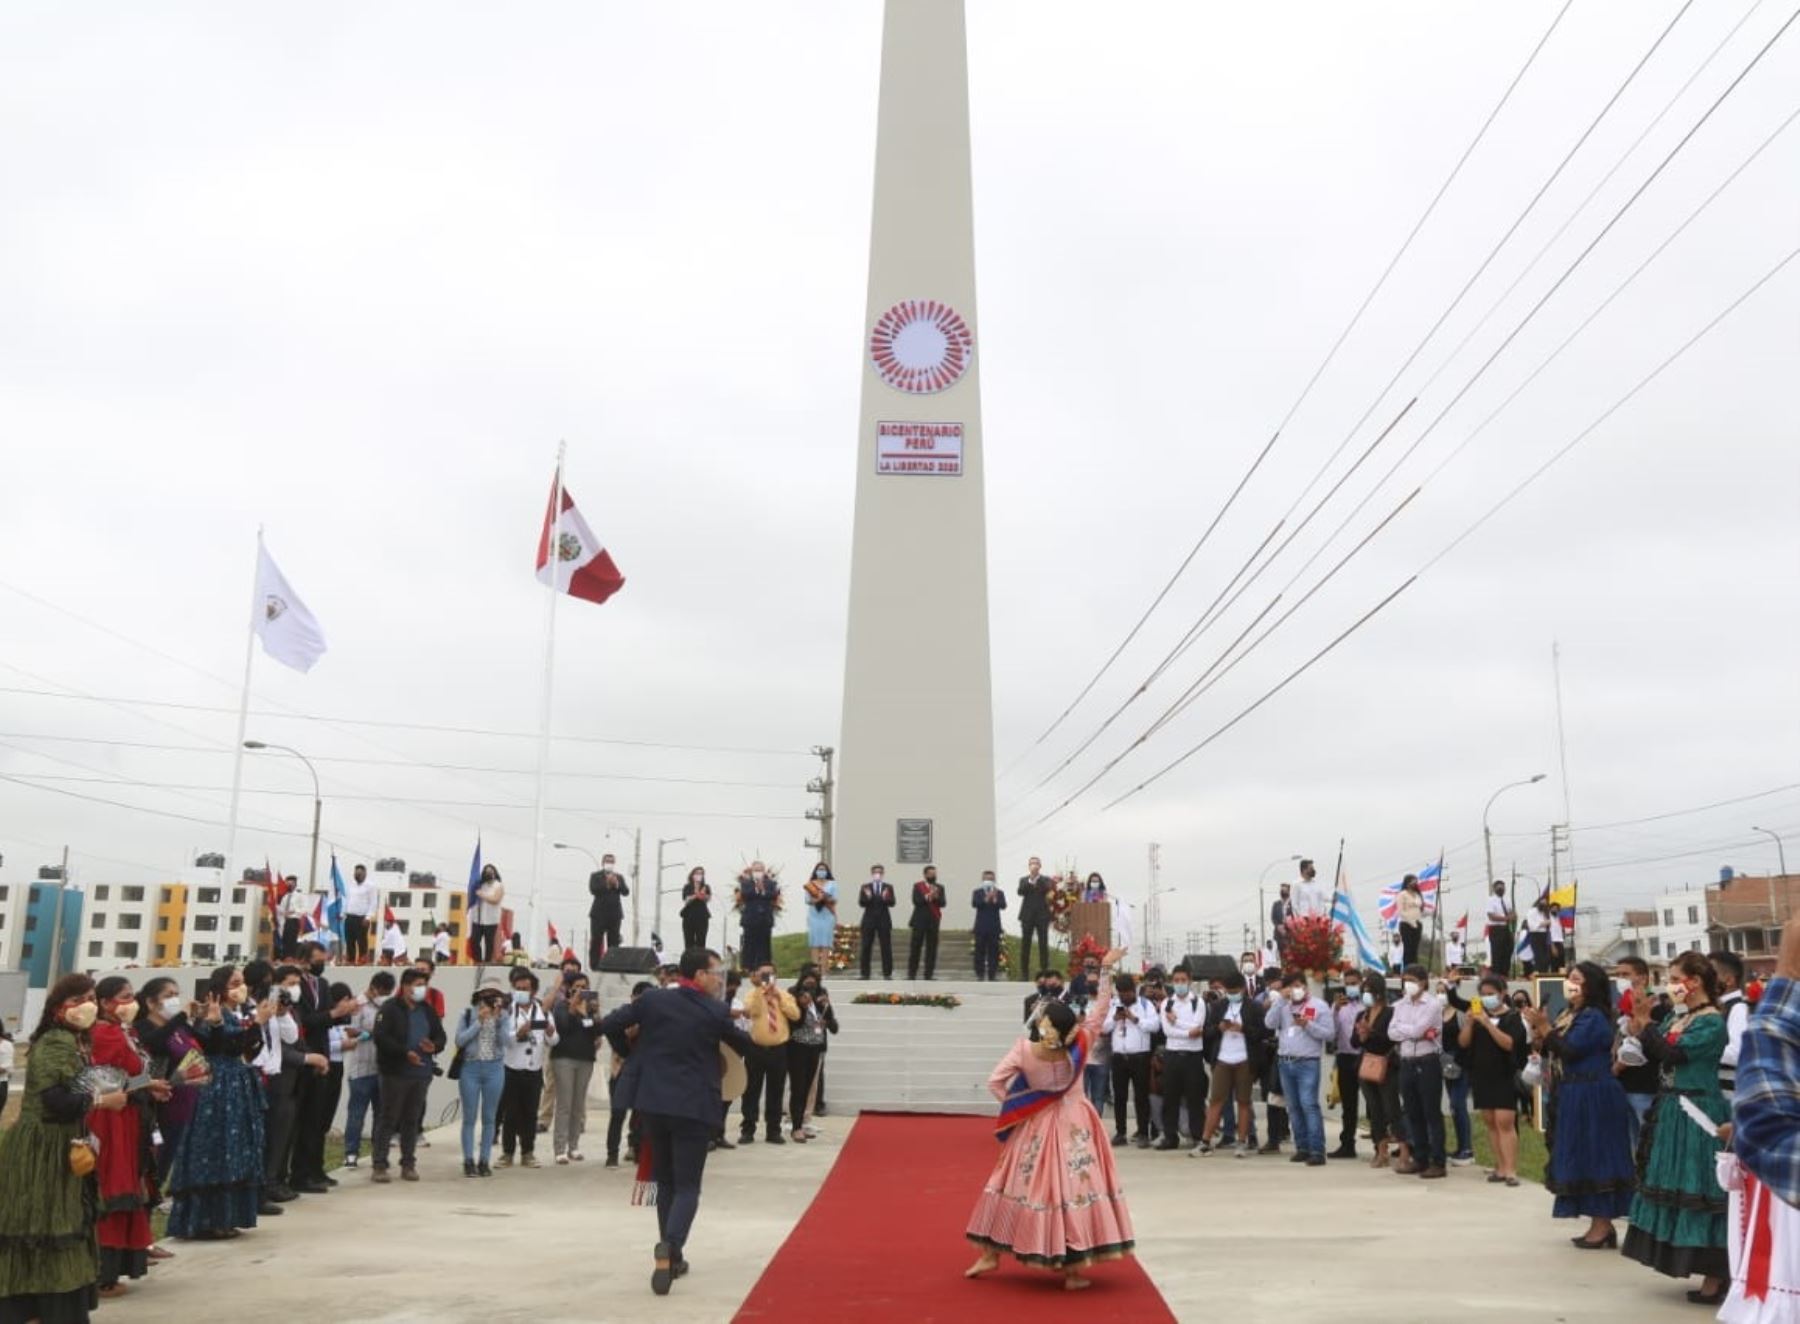 Ministro de Cultura, Alejandro Neyra, inauguró el obelisco del Bicentenario en Trujillo y resaltó que este monumento representa el esfuerzo y sacrificio de los trujillanos por lograr la independencia de Perú. Foto: Luis Puell